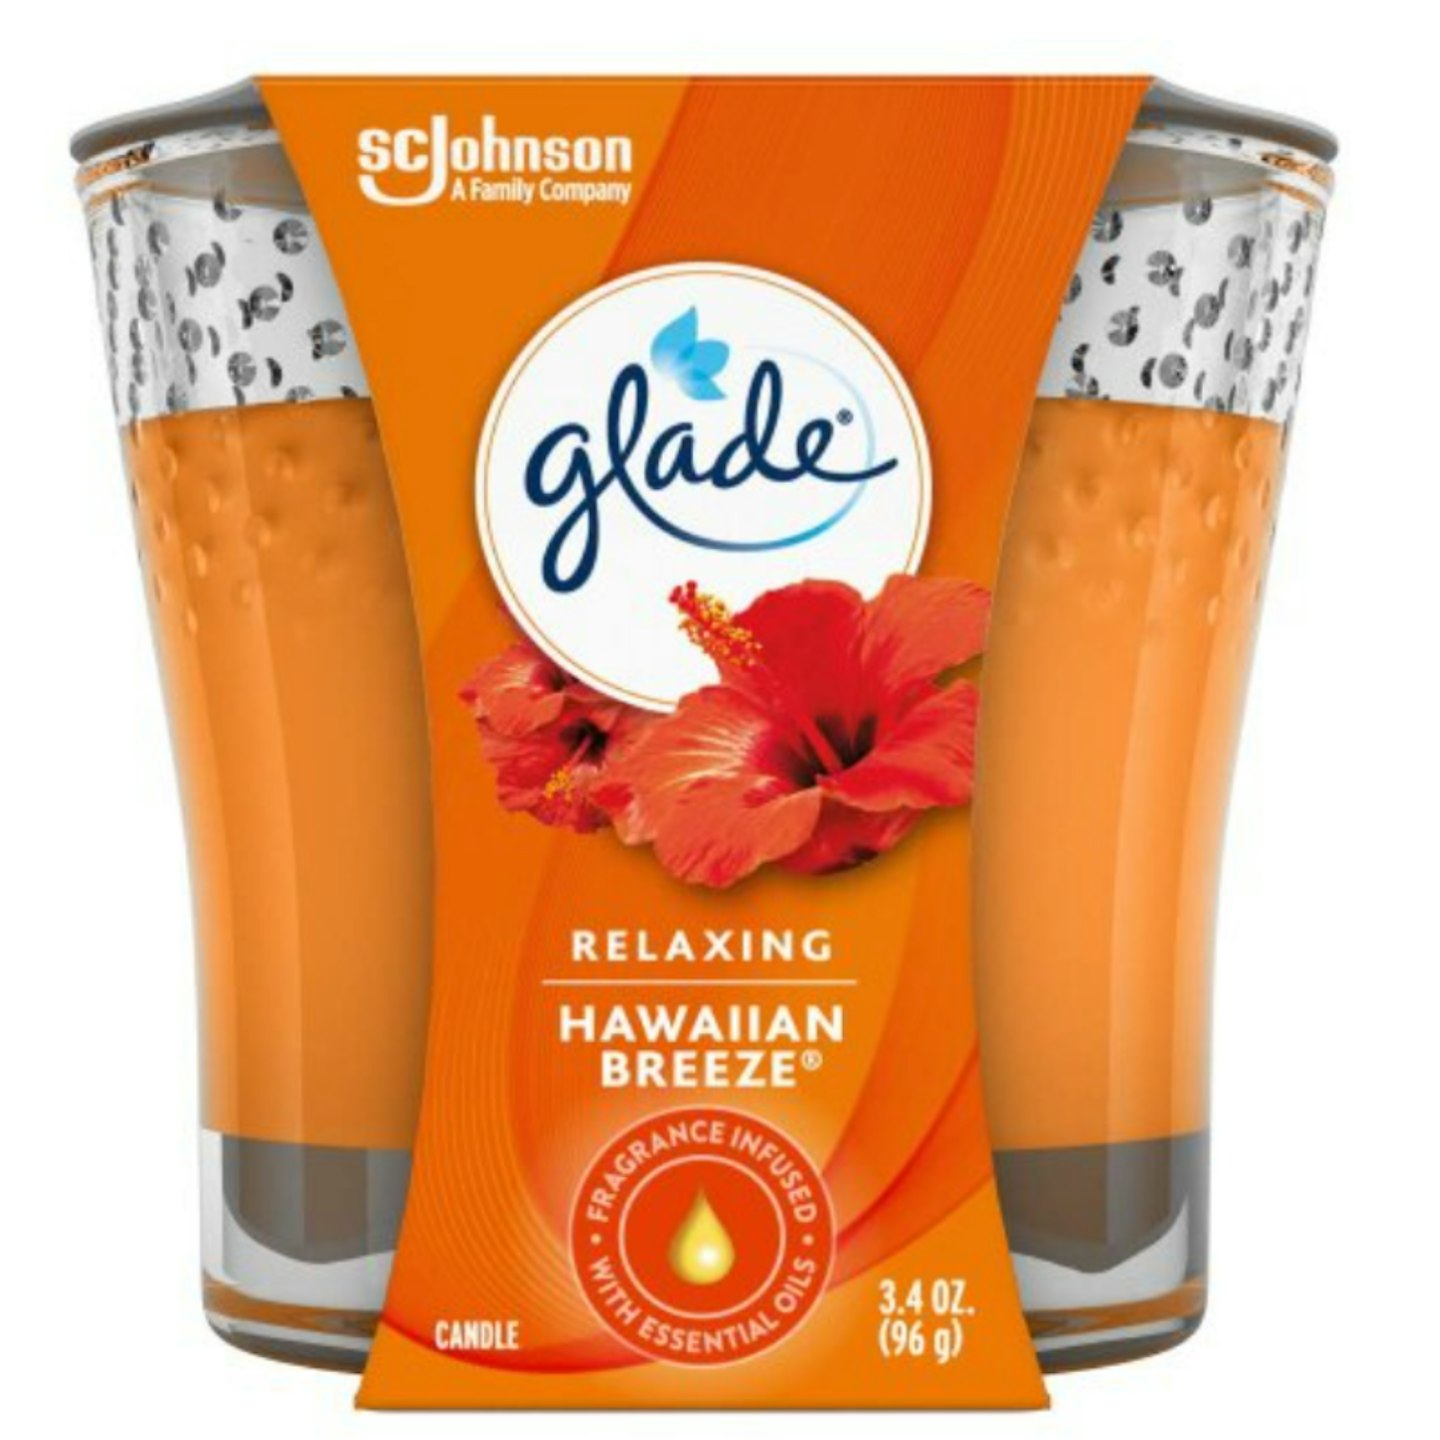 Glade Candle Jar, Air Freshener, Hawaiian Breeze, 3.4 Oz